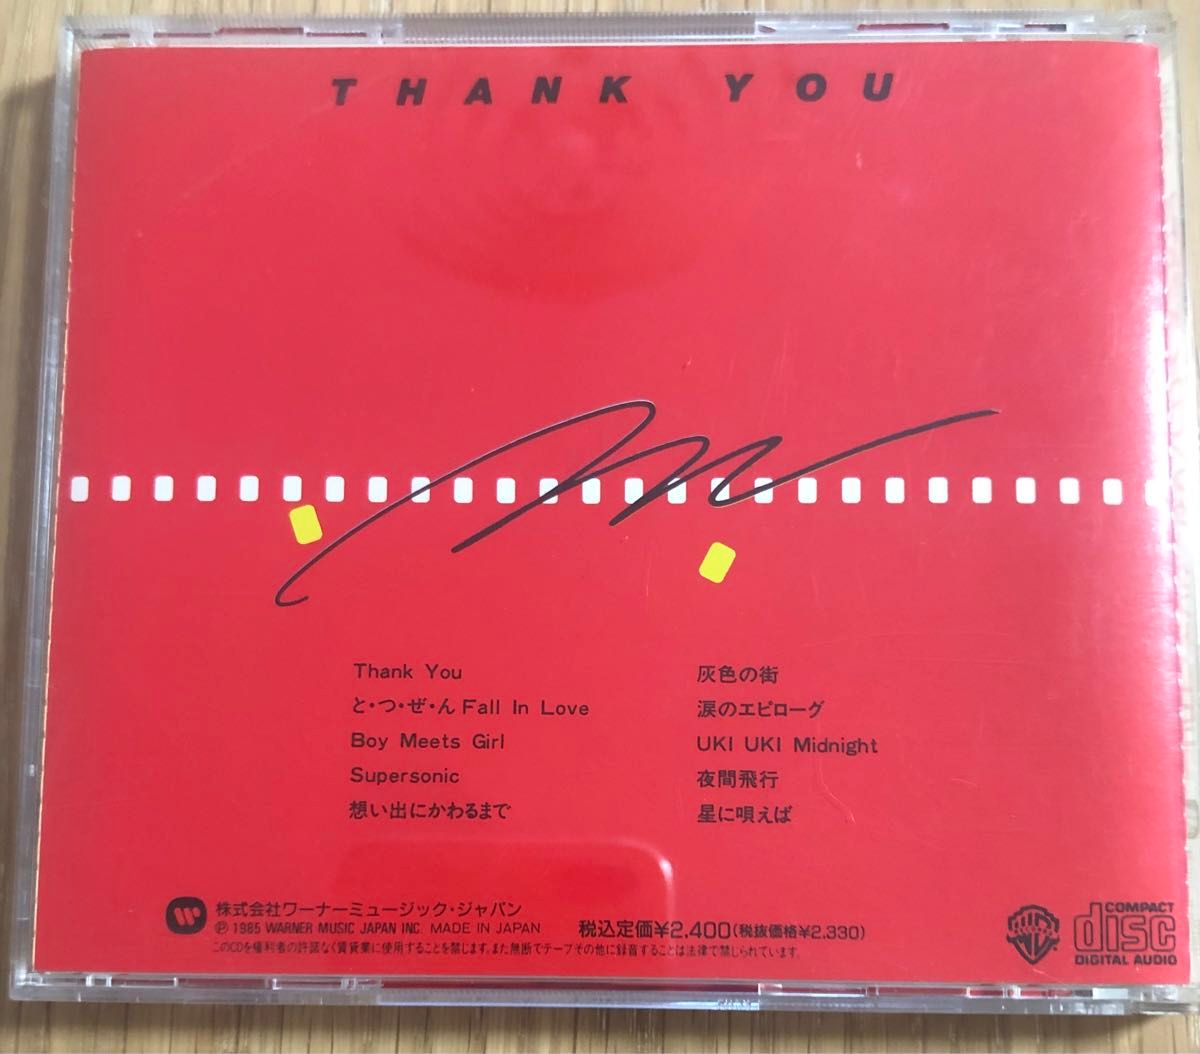 THANK YOU／スターダスト・レビュー／CD